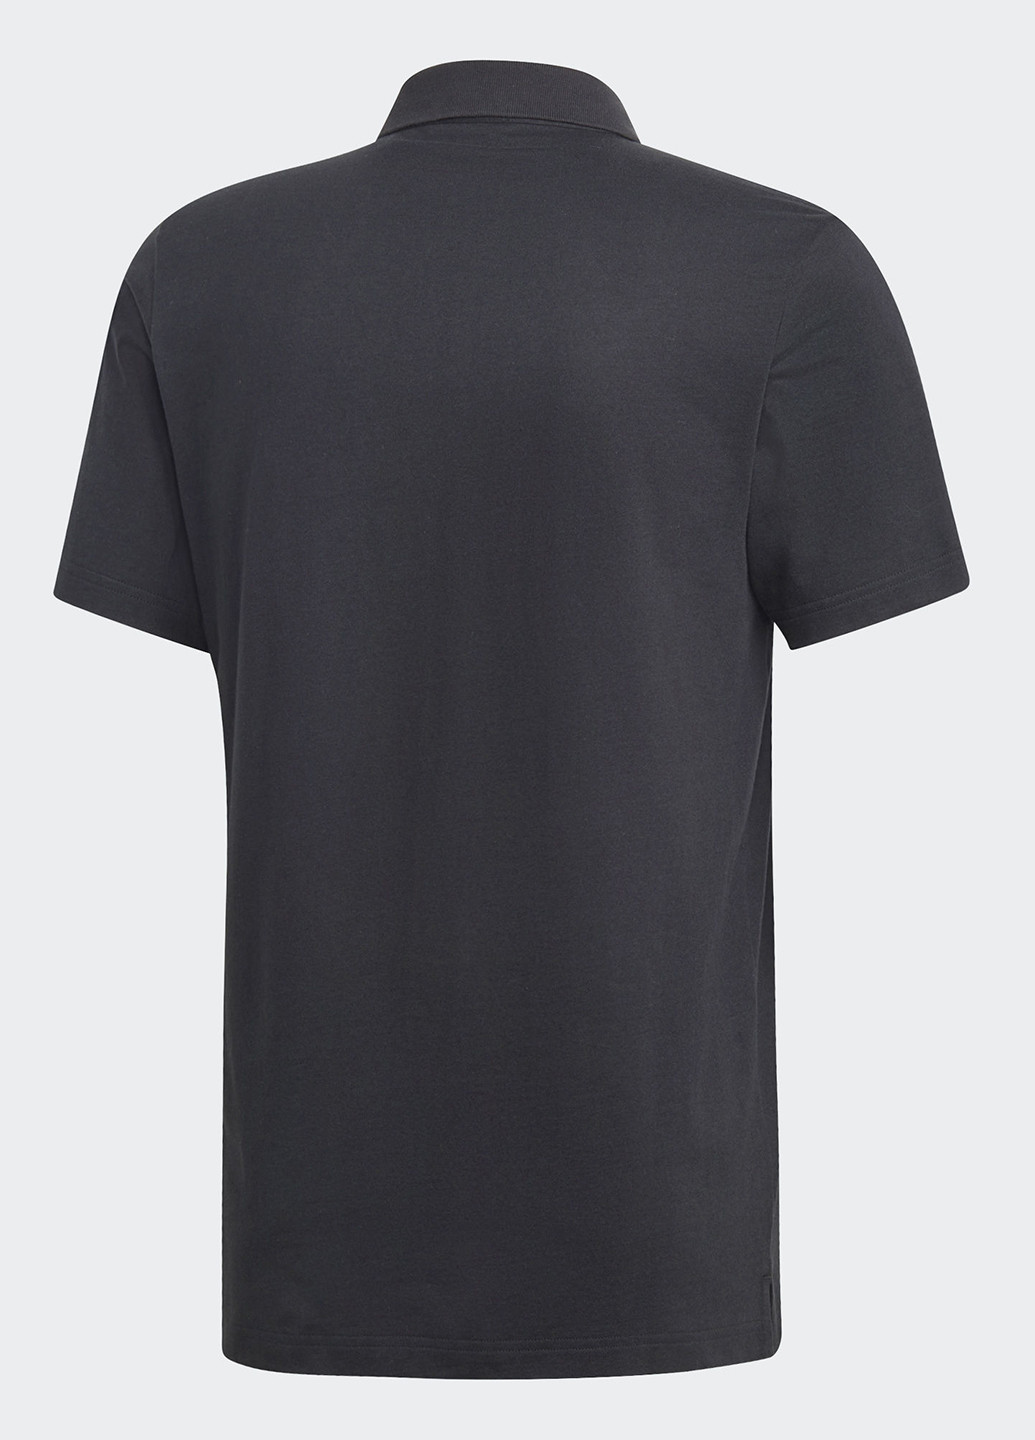 Черная футболка-поло для мужчин adidas с логотипом